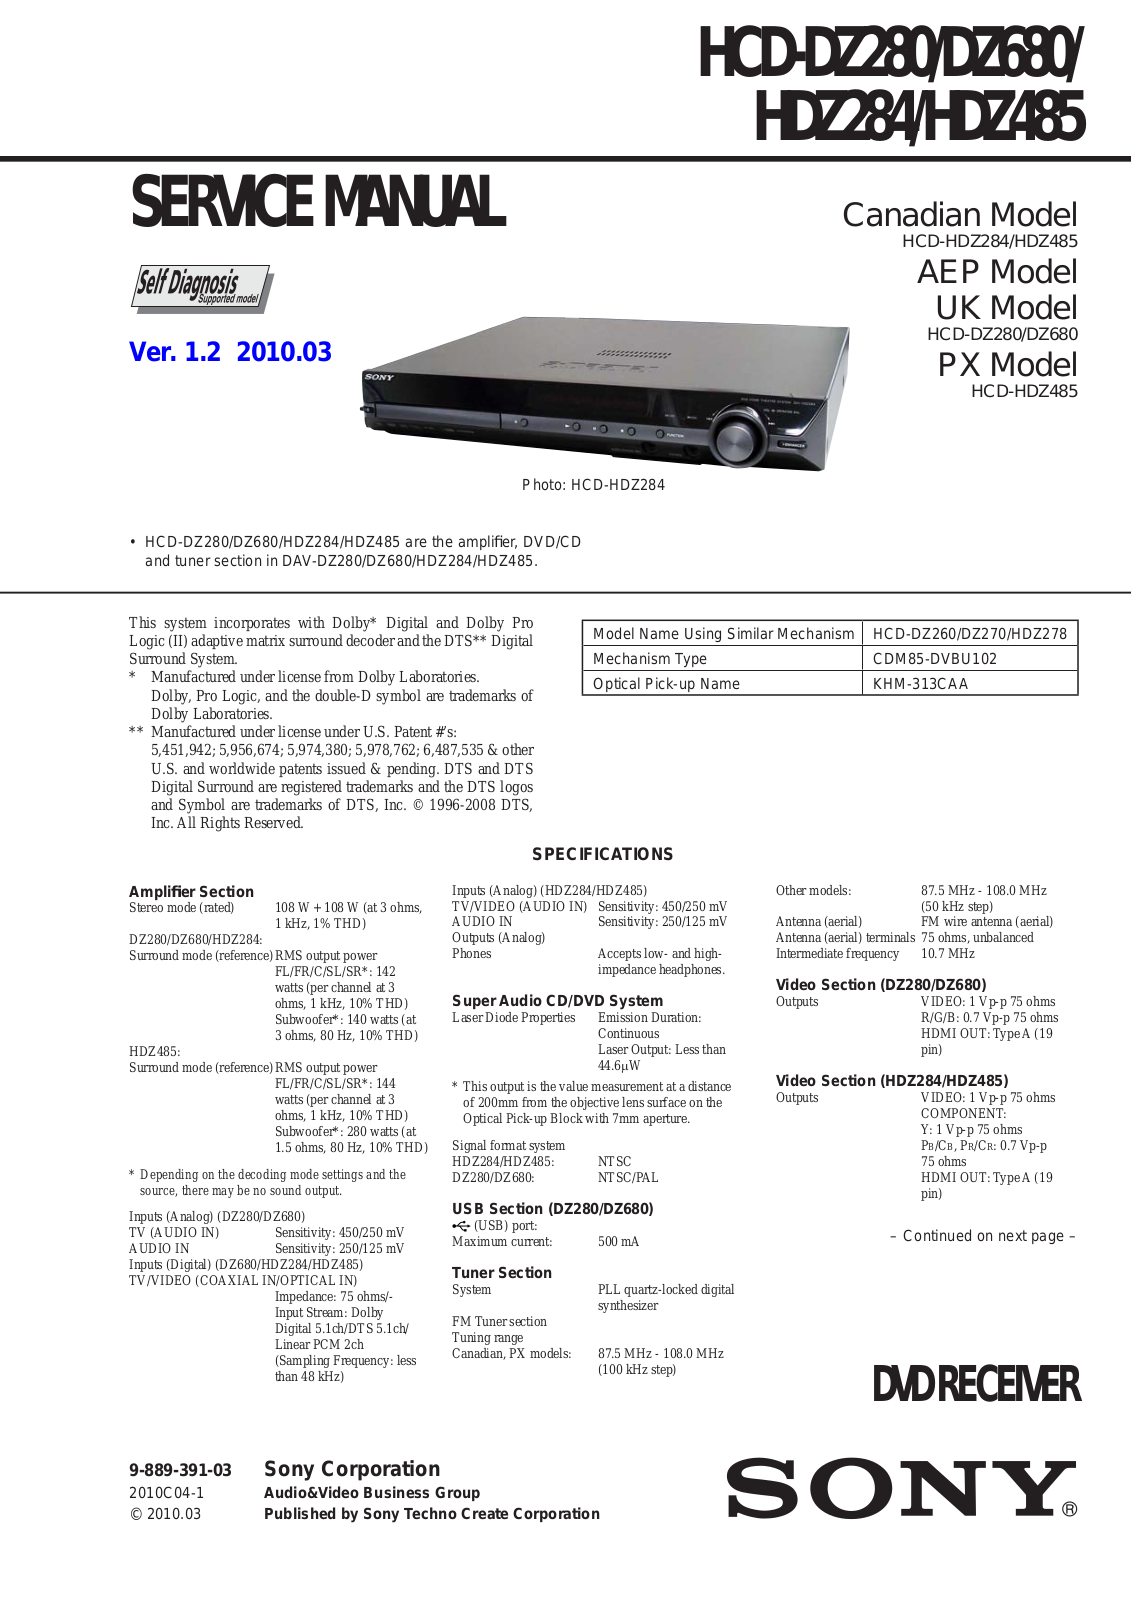 Sony HCD-DZ280, HCD-DZ680, HCD-HDZ284, HCD-HDZ485 Service Manual